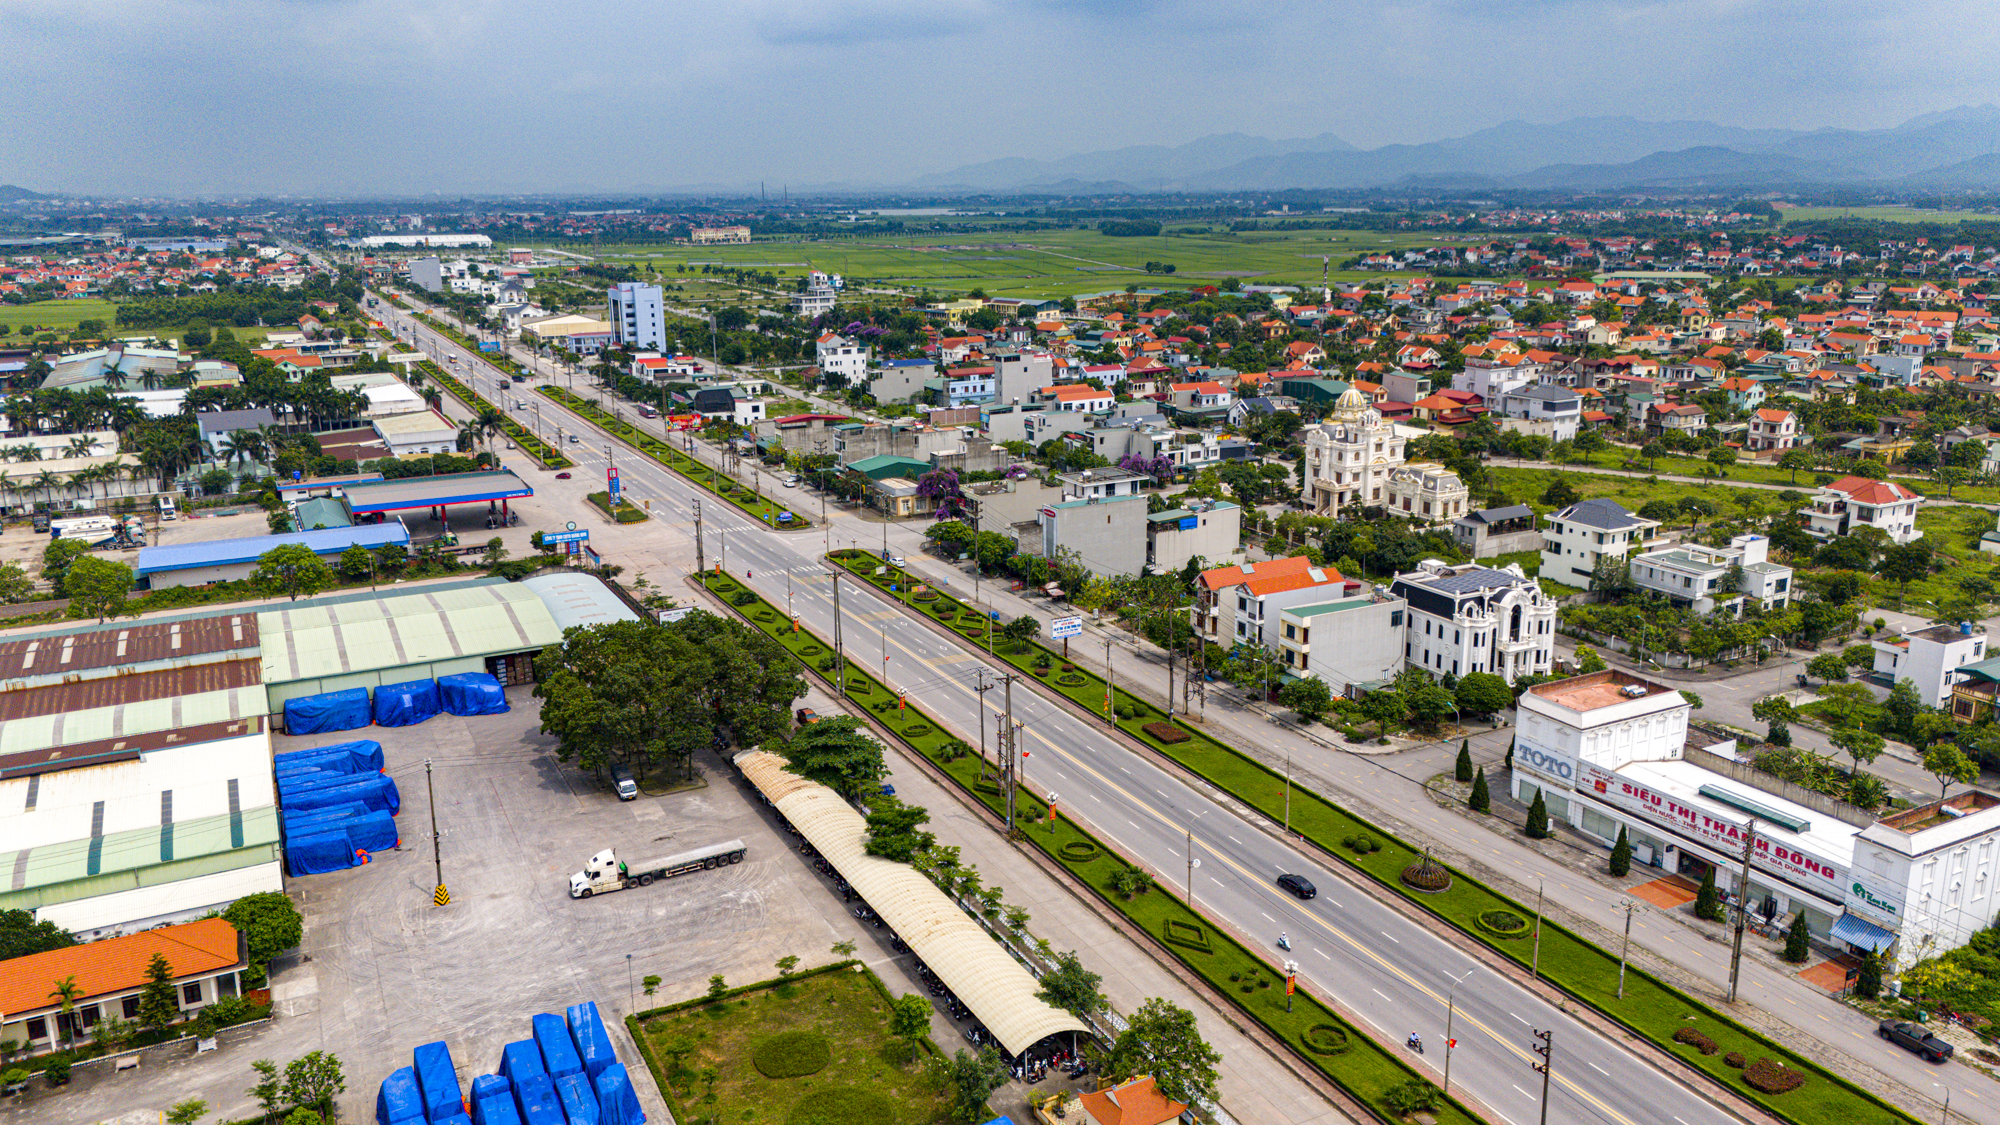 Diện mạo thị xã nằm ở giao điểm tam giác kinh tế Hà Nội - Hải Phòng - Quảng Ninh, có thể đưa tỉnh giáp biên giới trở thành tỉnh có nhiều thành phố nhất- Ảnh 4.